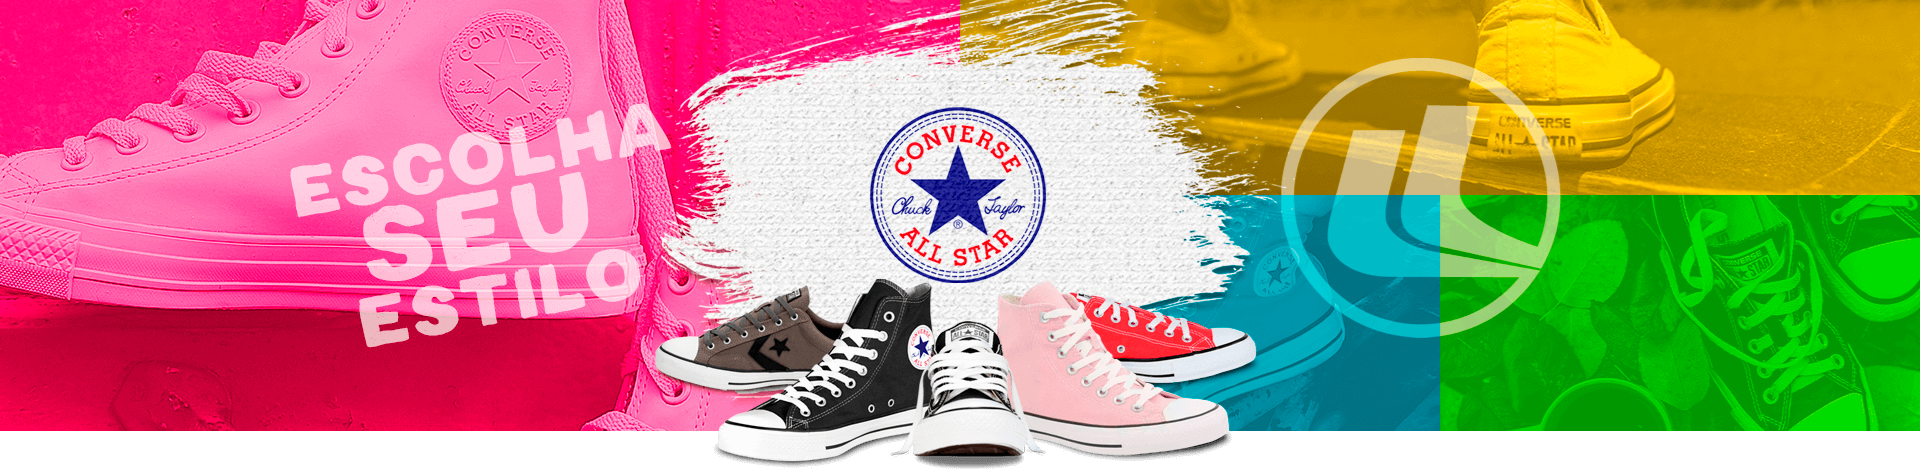 Converse All Star - Escolha seu estilo